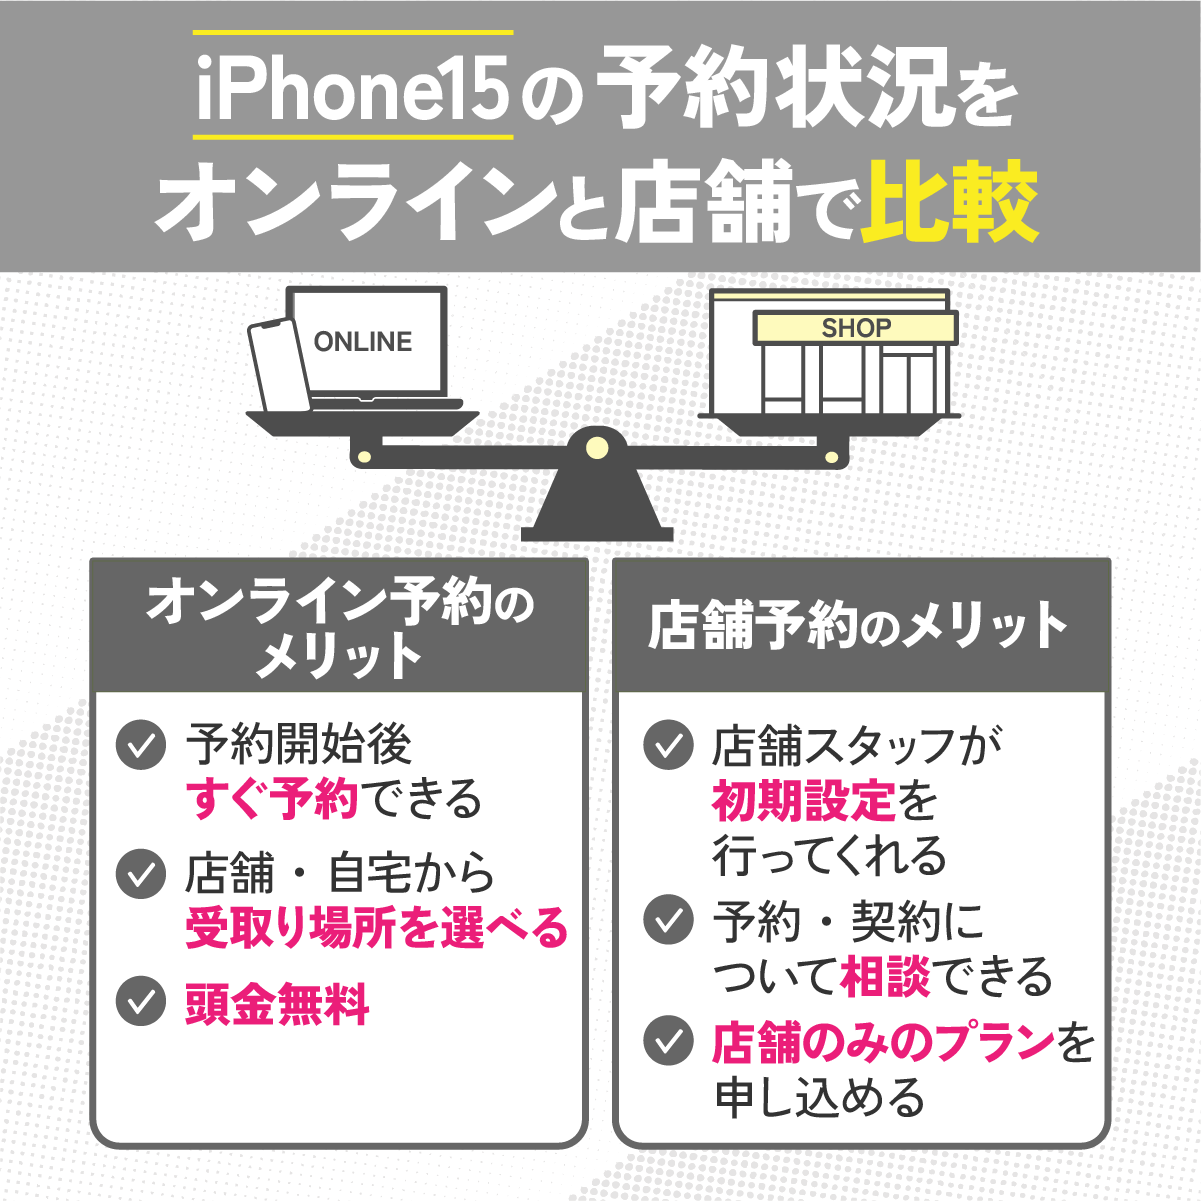 iPhone15の予約を【オンライン】と【店舗】で比較